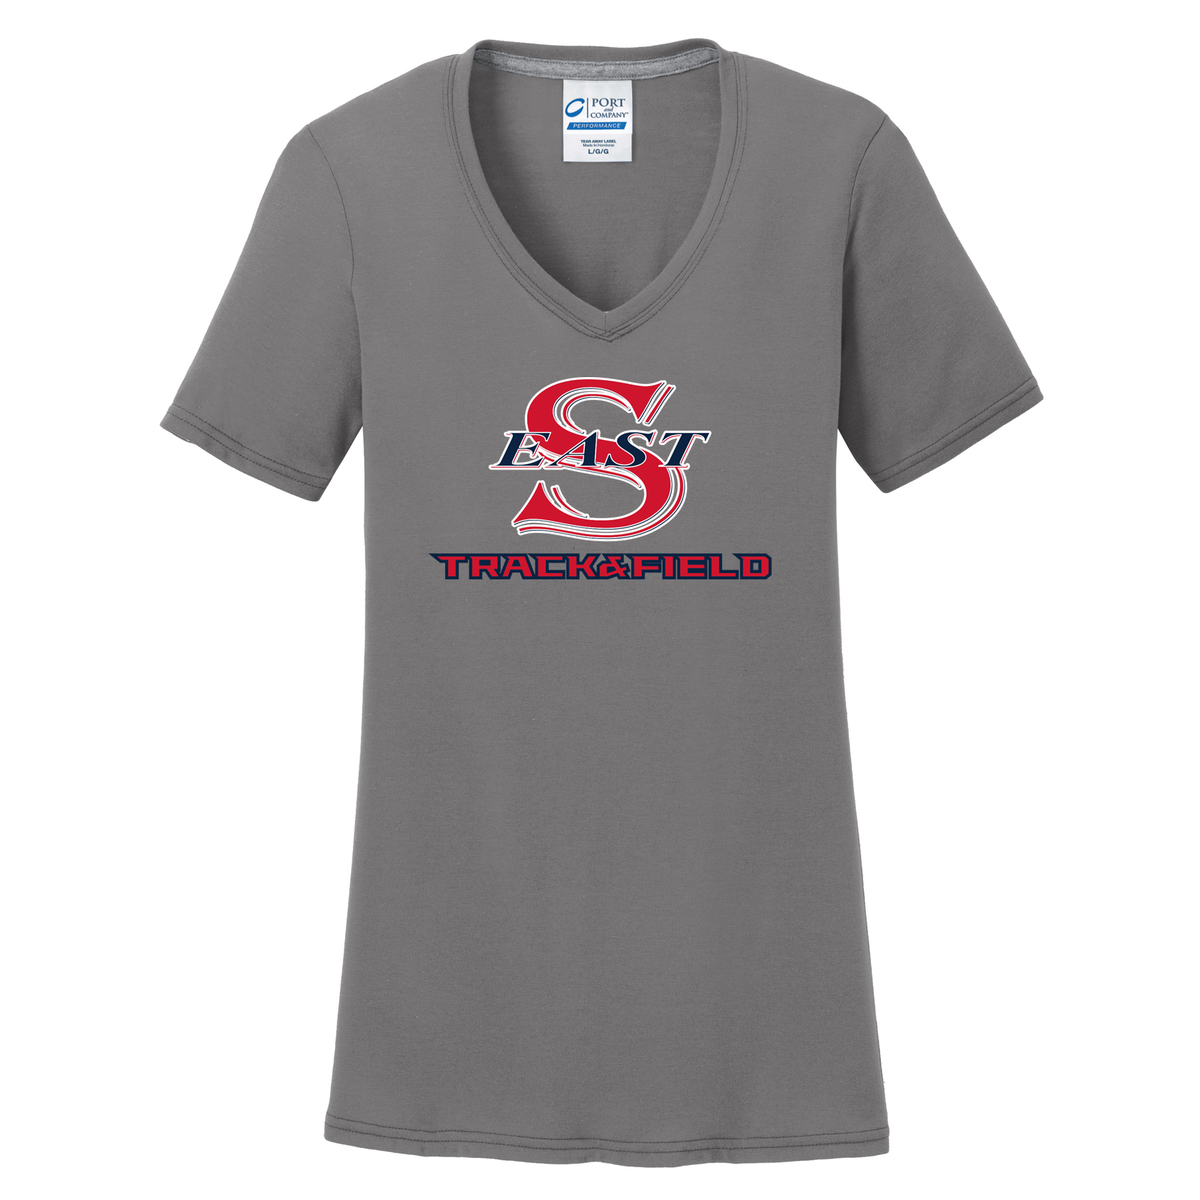 Smithtown East T&F Women's T-Shirt